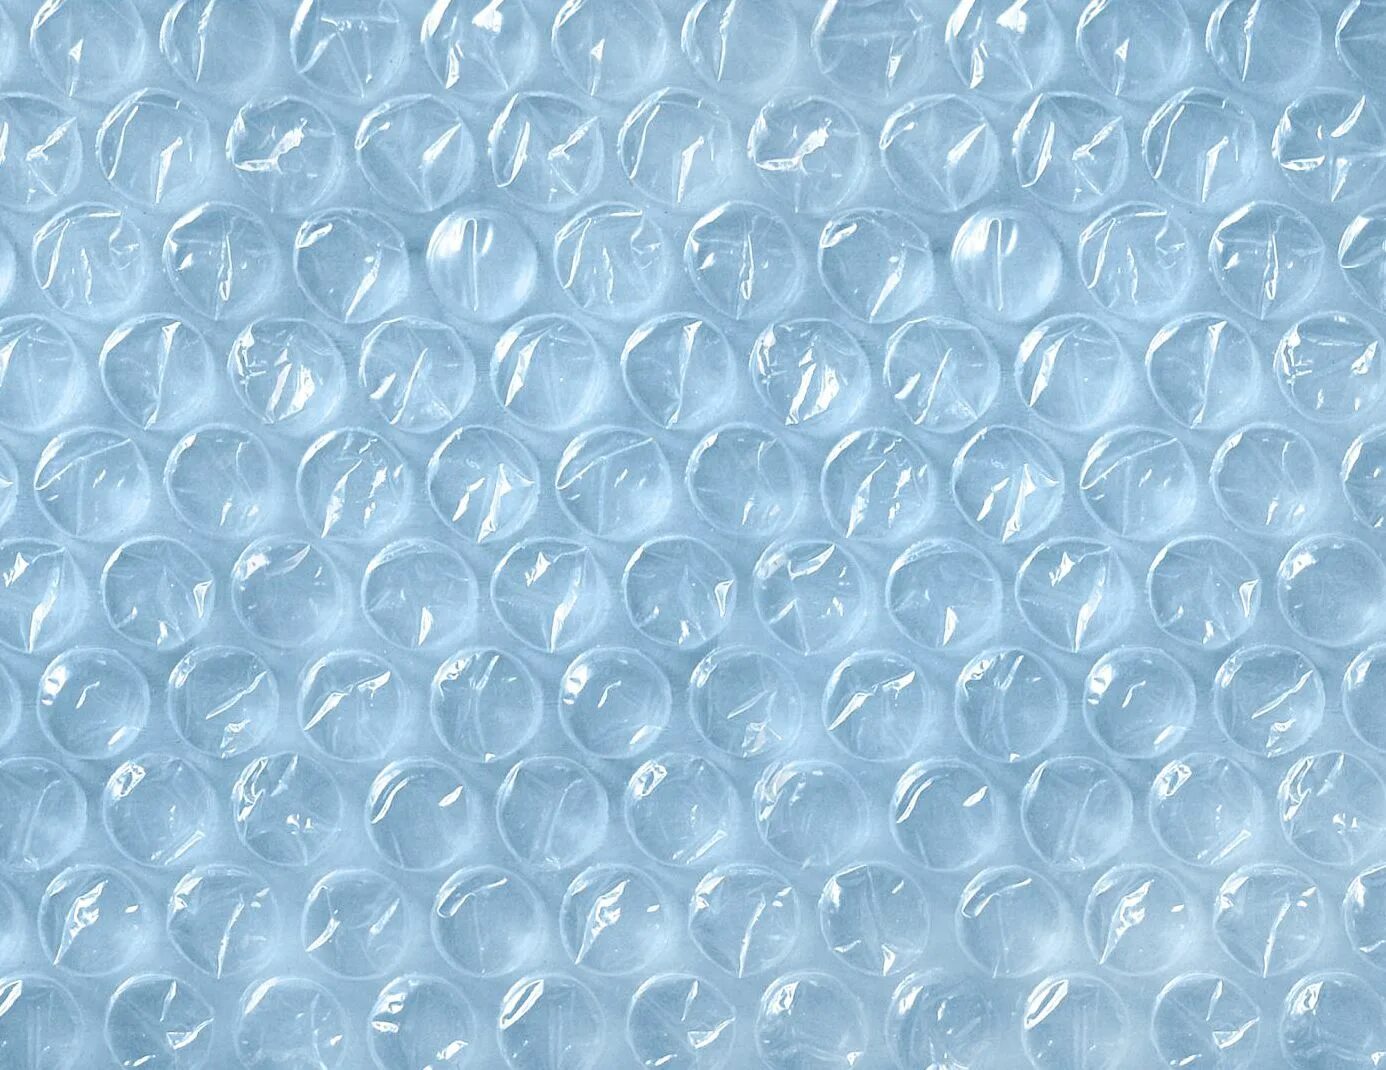 Ткань пузырьки. Пленка с пупырышками. Пленка с пузырями. Пленка воздушно-пузырчатая. Пузырчатая пленка текстура.